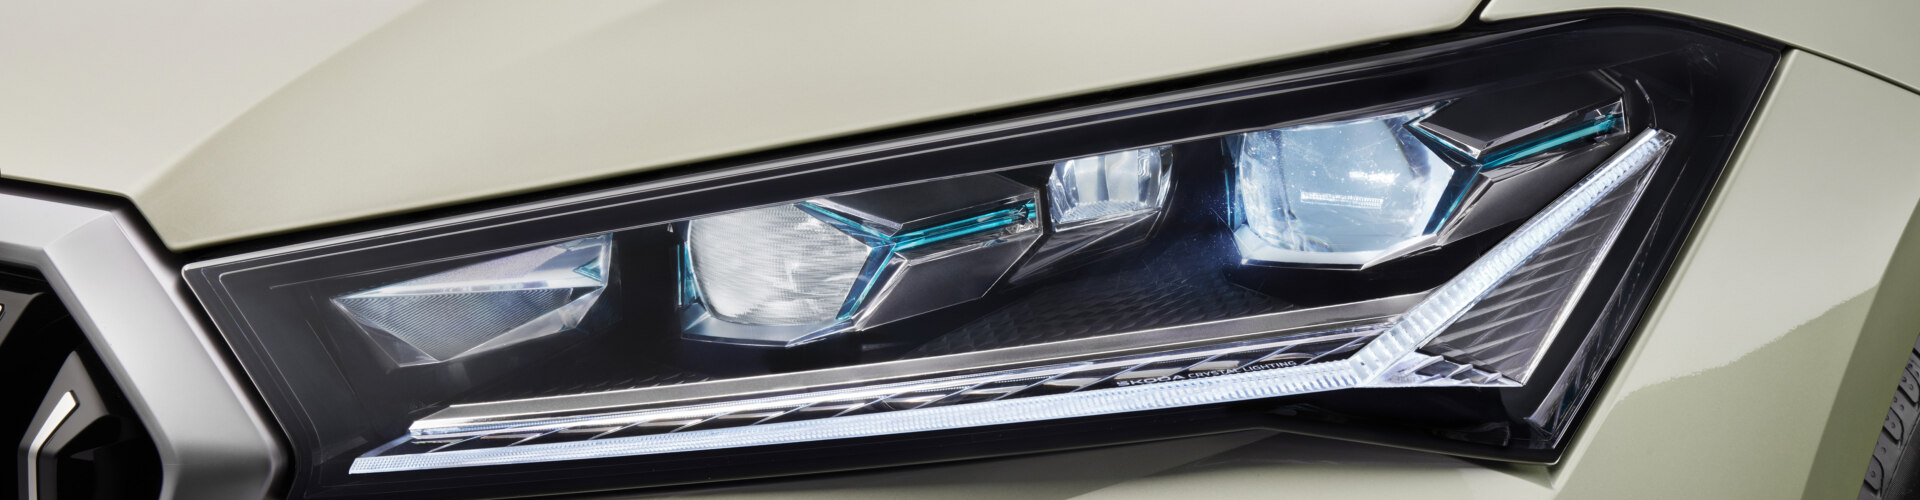 Crystallinium – mała rewolucja w reflektorach samochodowych